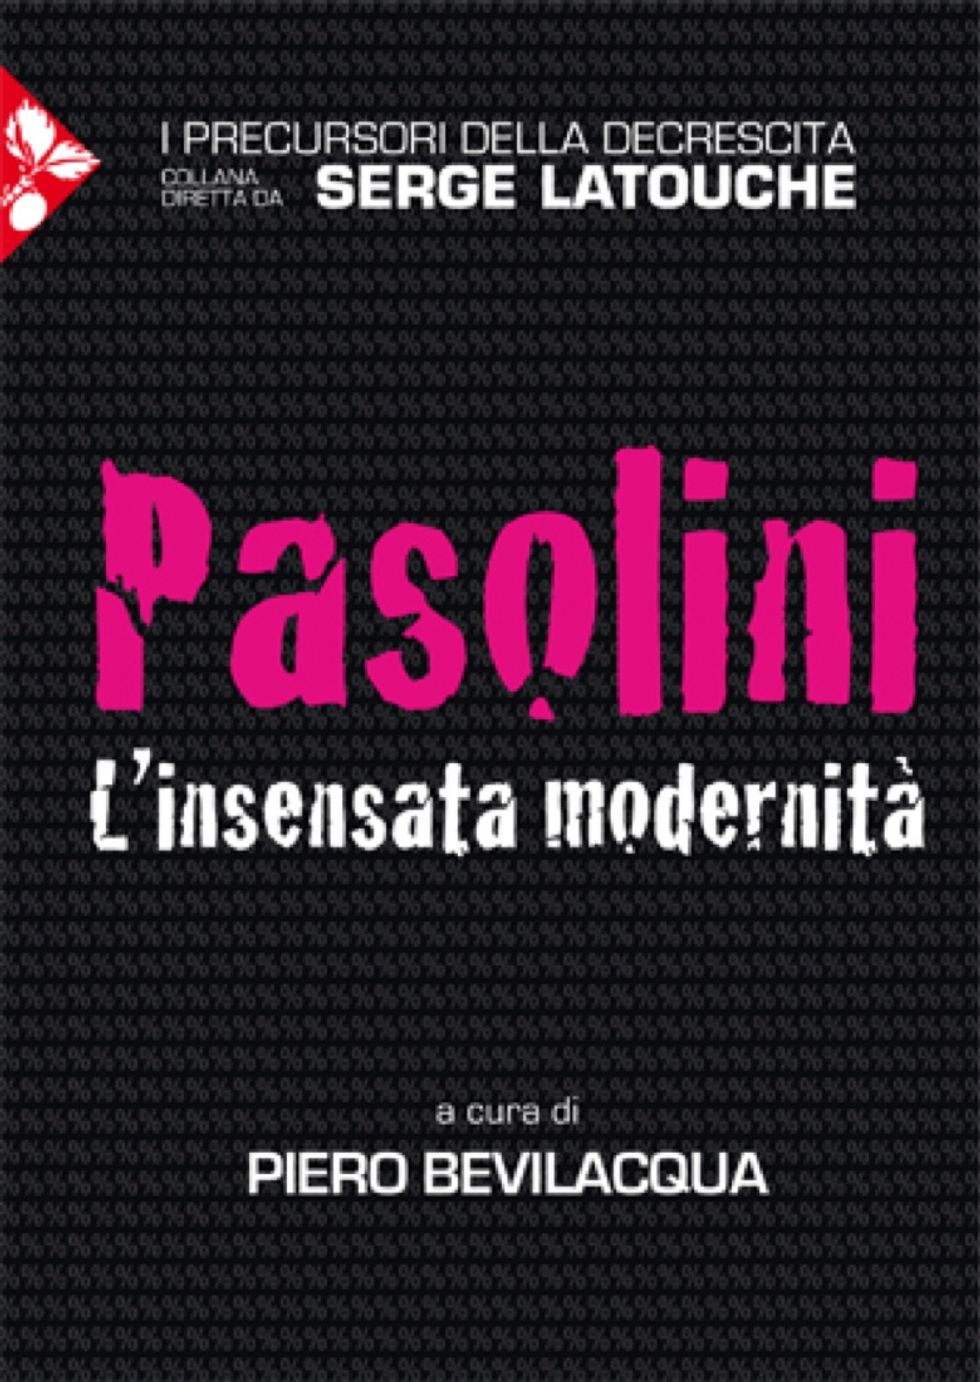 Pier Paolo Pasolini e la decrescita